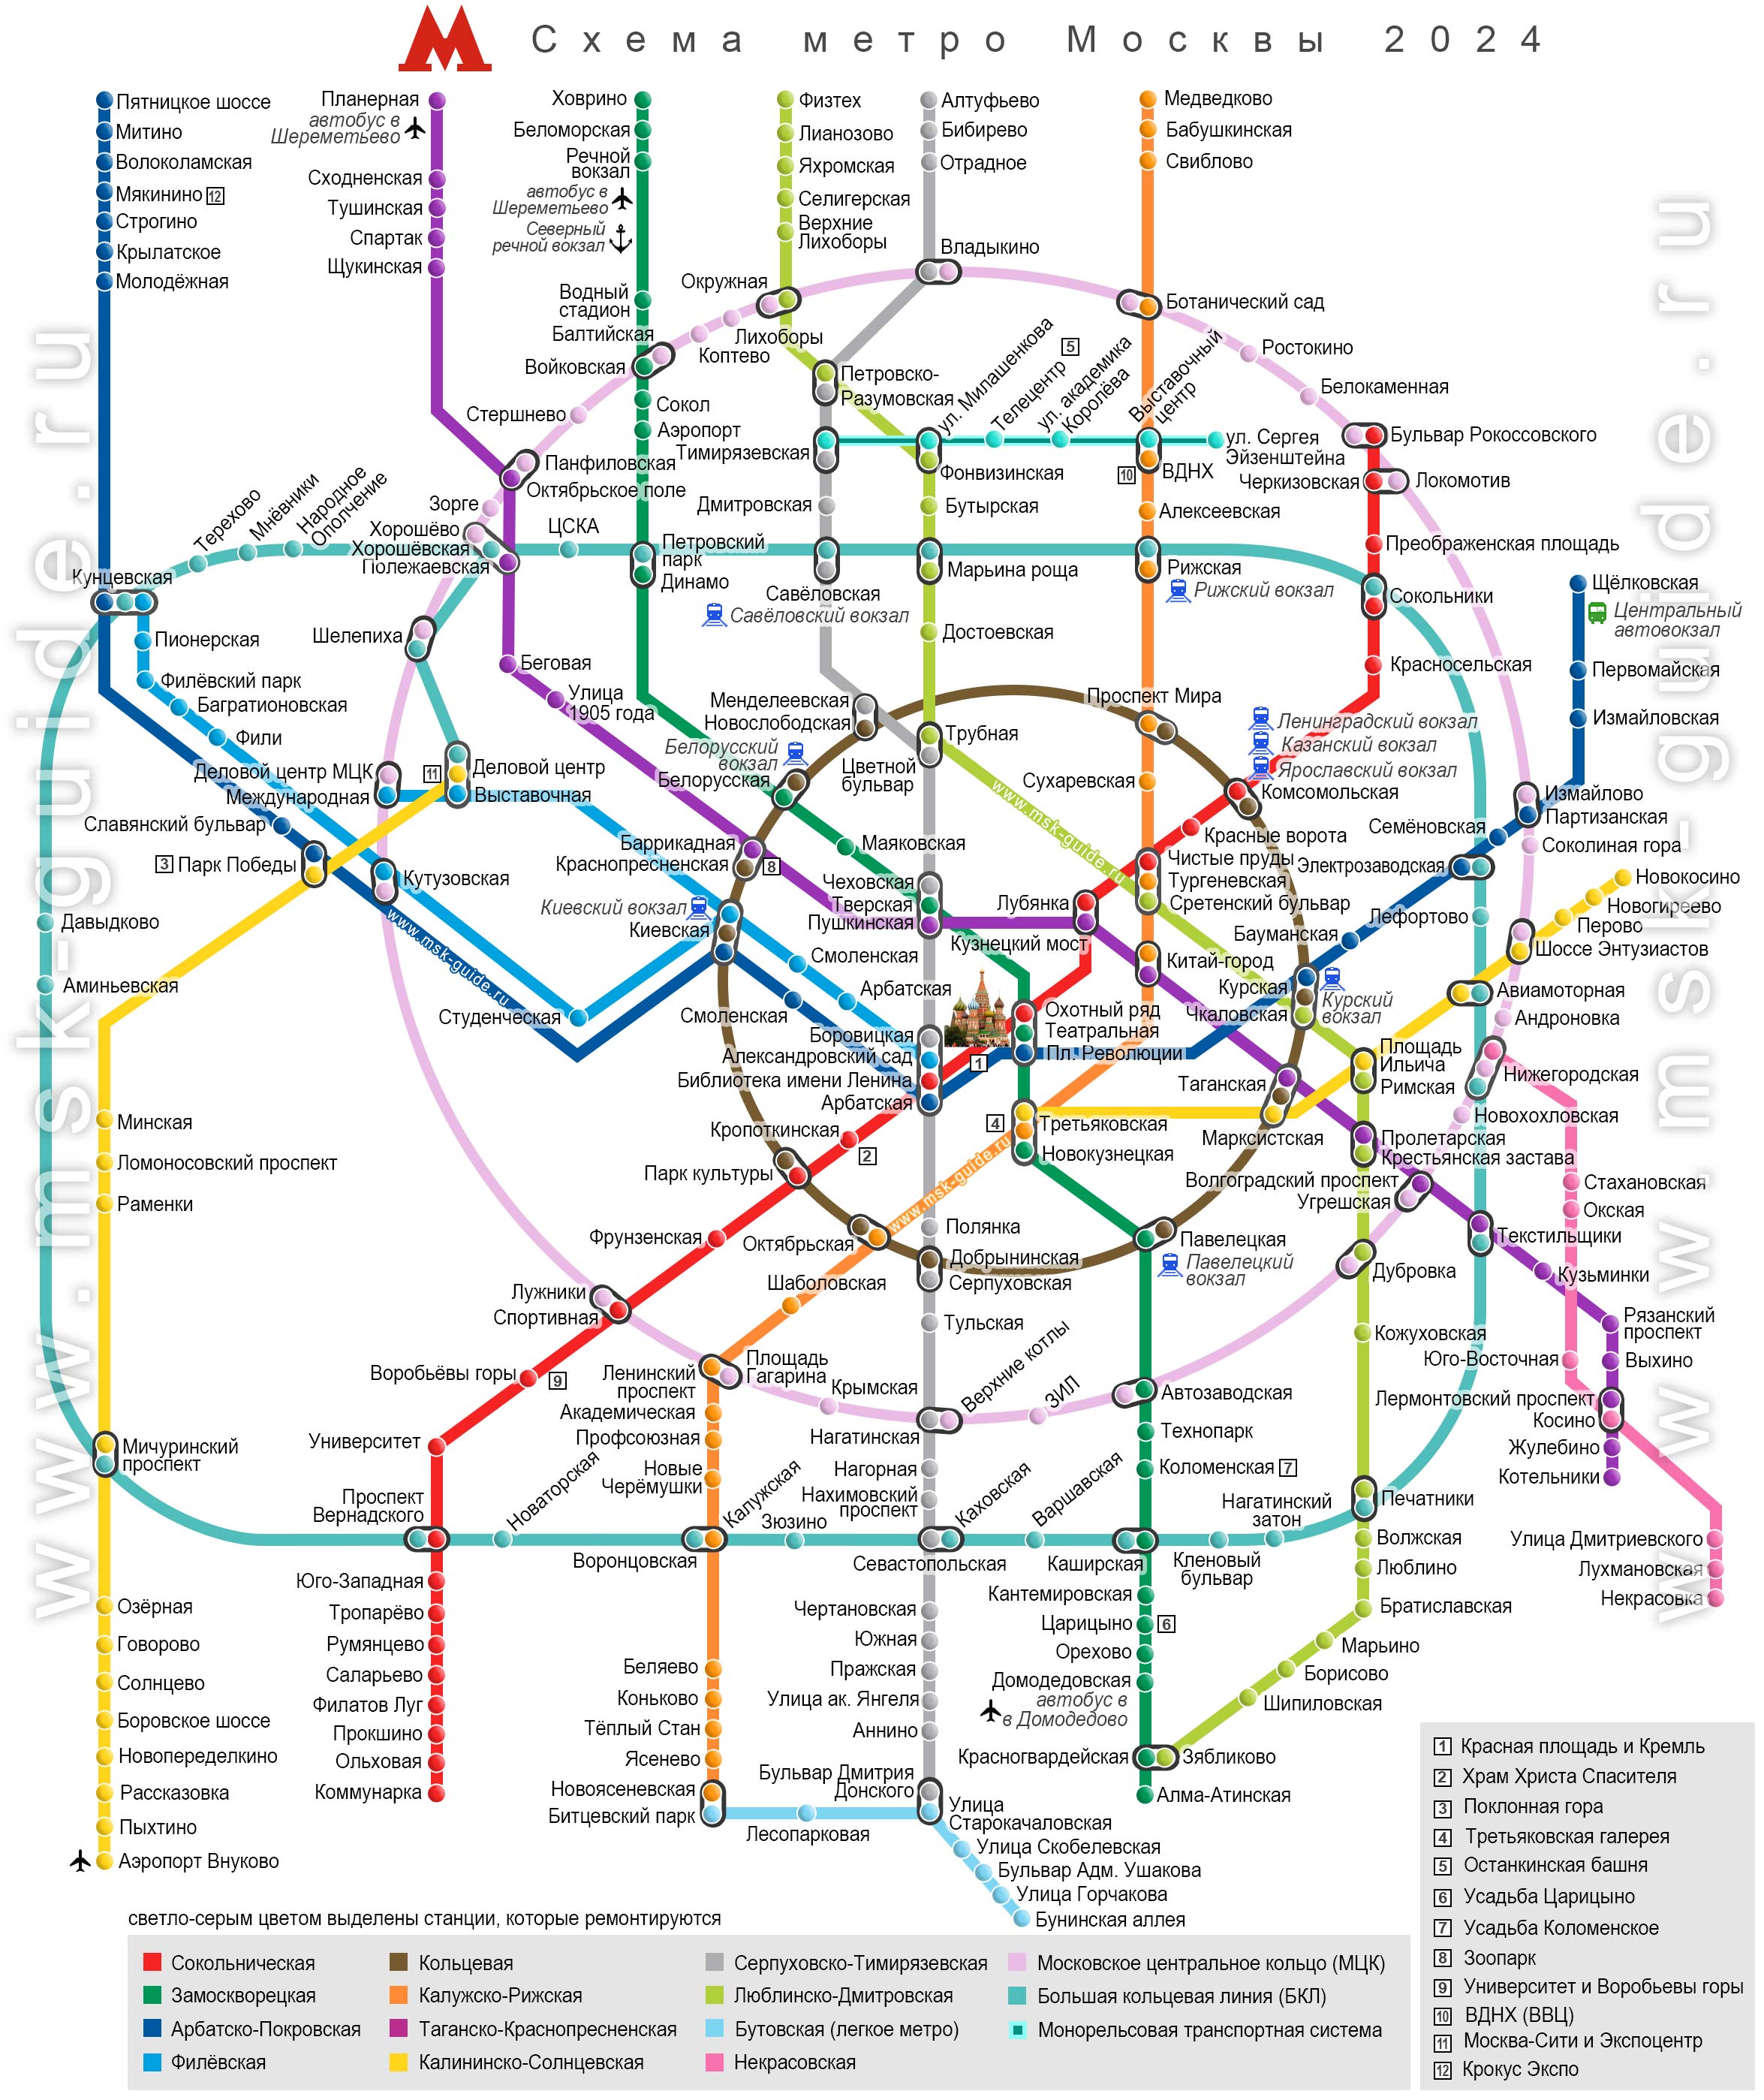 Карта Метрополитена (в некоторых изданиях отсутствует)